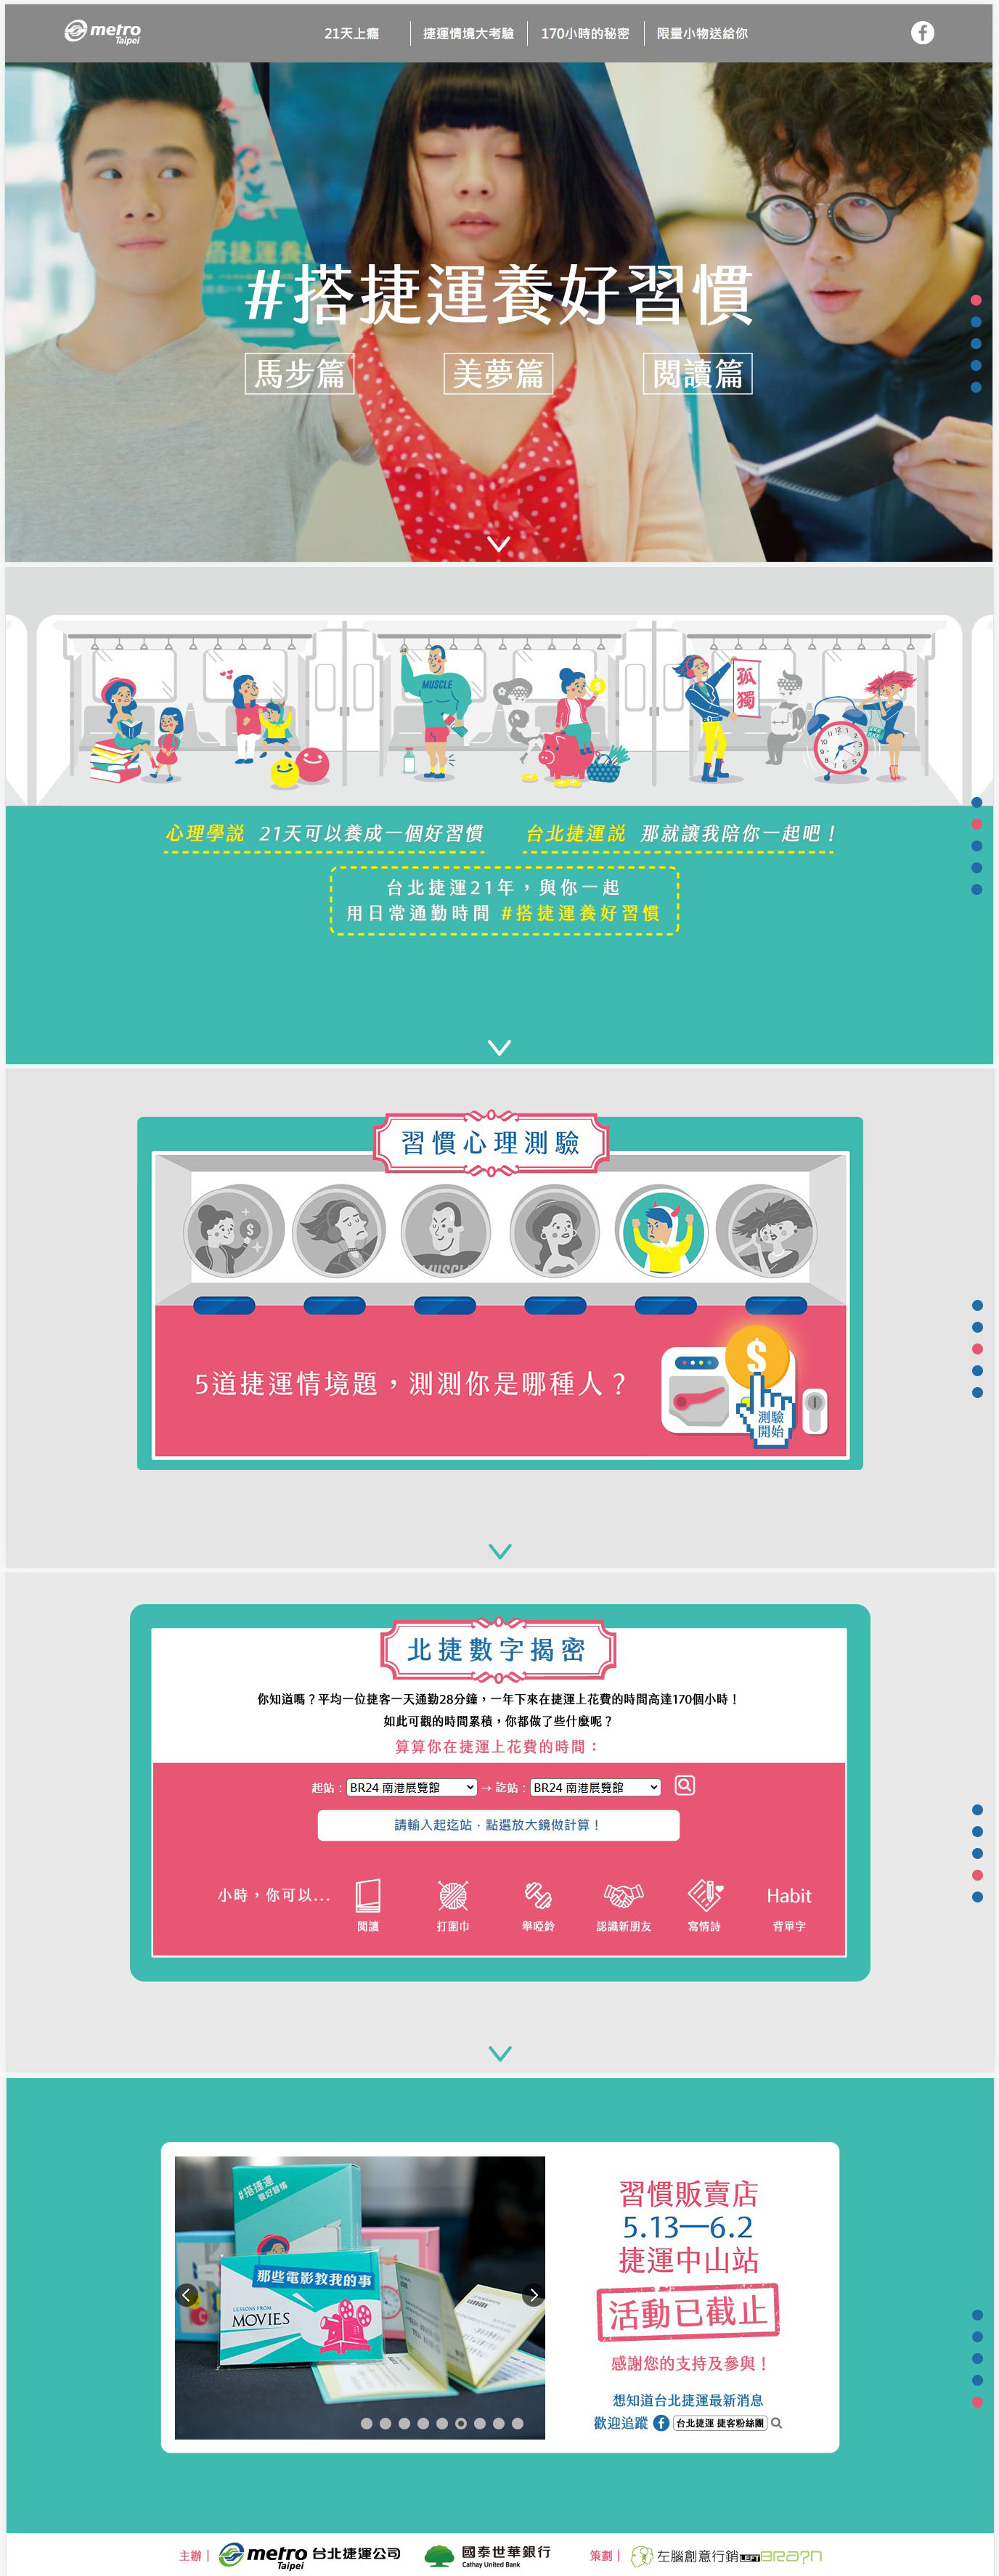 活動網頁設計台北捷運習慣販賣店